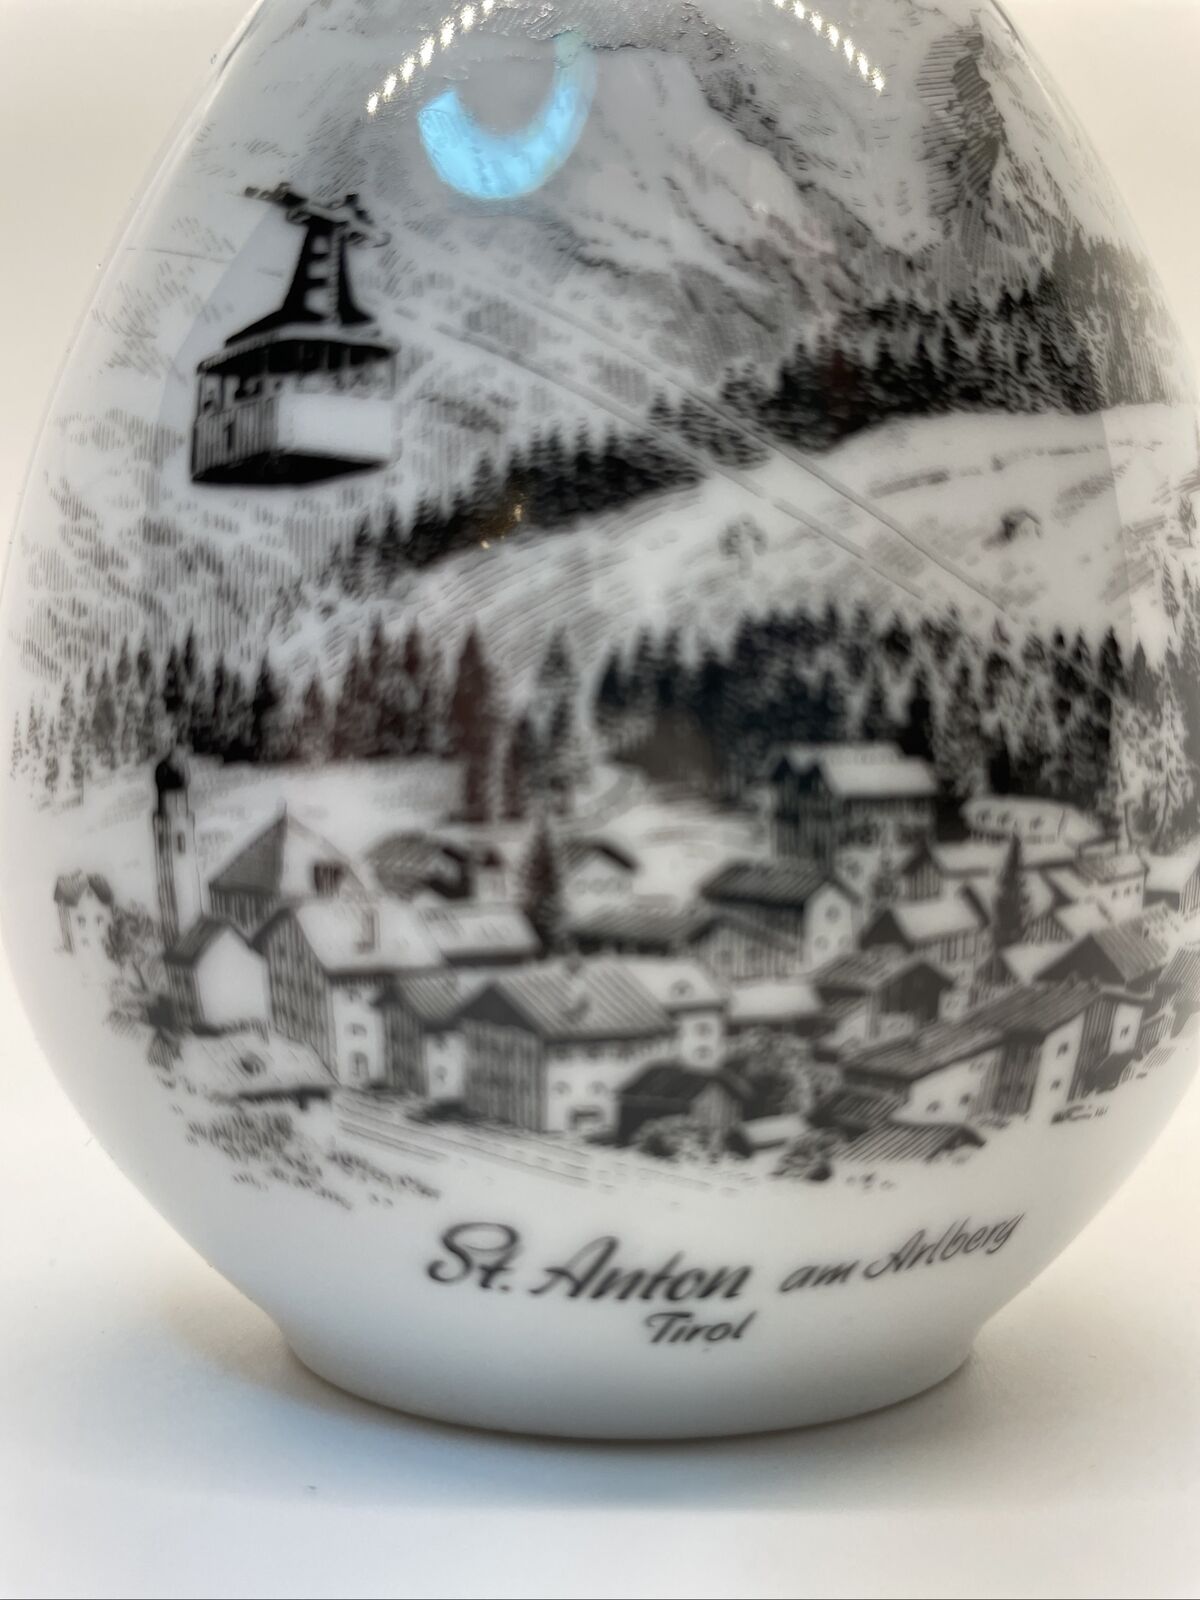 AK Kaiser Porcelain Bud Vase St Anton am Arlberg Tirol Germany